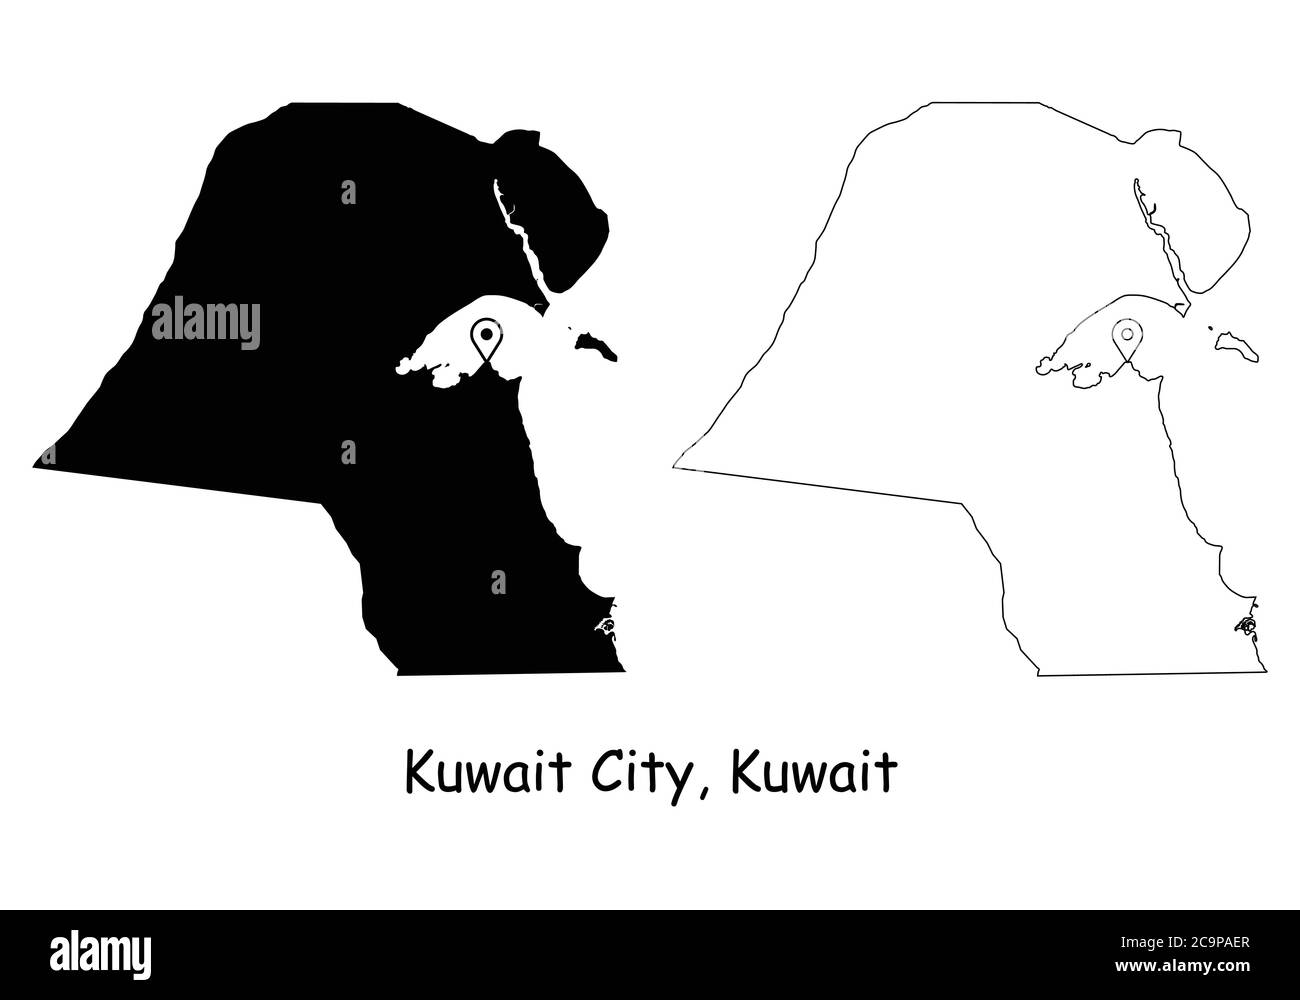 Koweït City Koweït. Carte détaillée du pays avec broche d'emplacement sur Capital City. Cartes silhouettes et vectorielles noires isolées sur fond blanc. Vecteur EPS Illustration de Vecteur